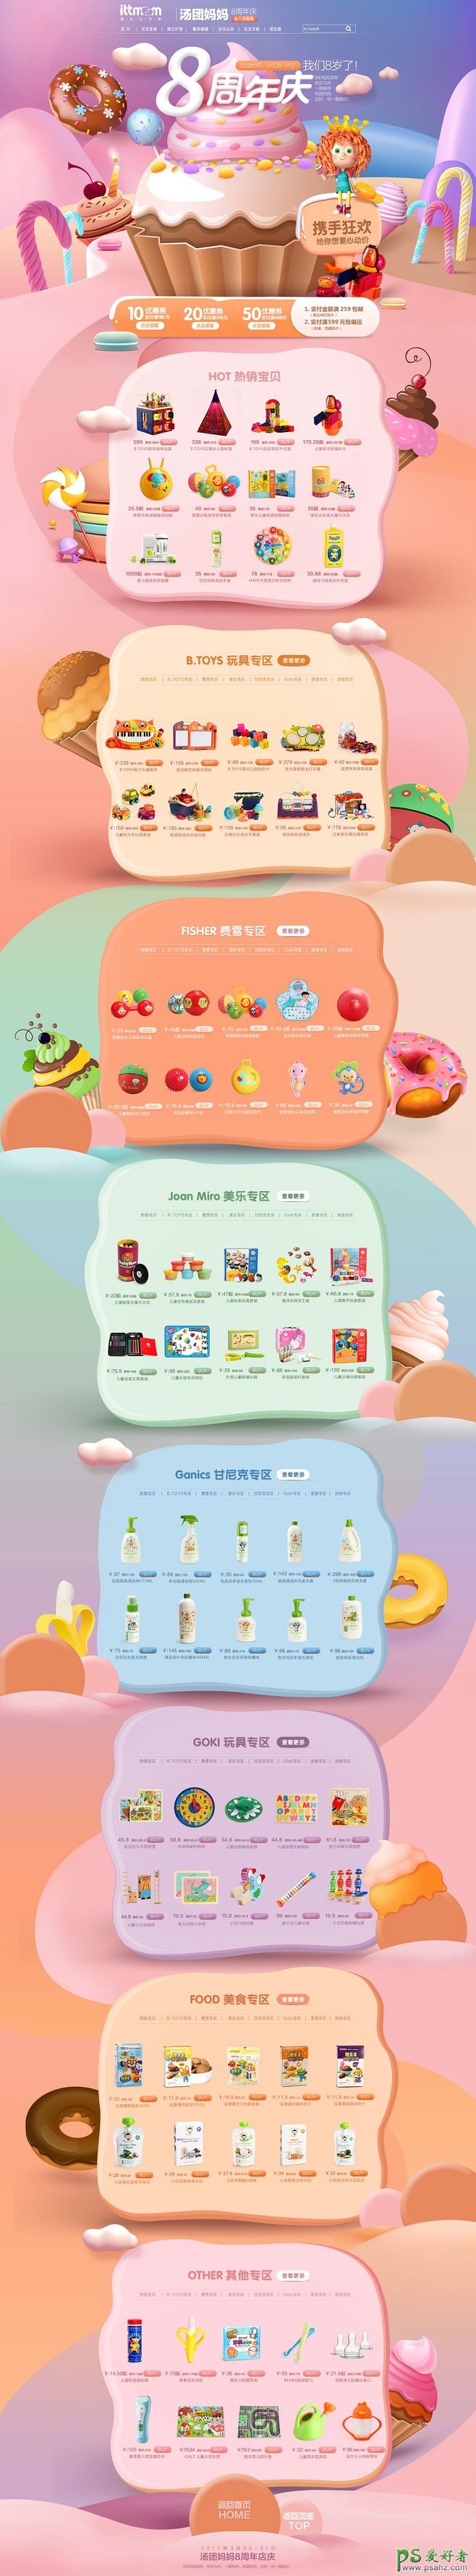 甜品电商网站设计欣赏 非常有创意的电商网站年庆活动首页设计